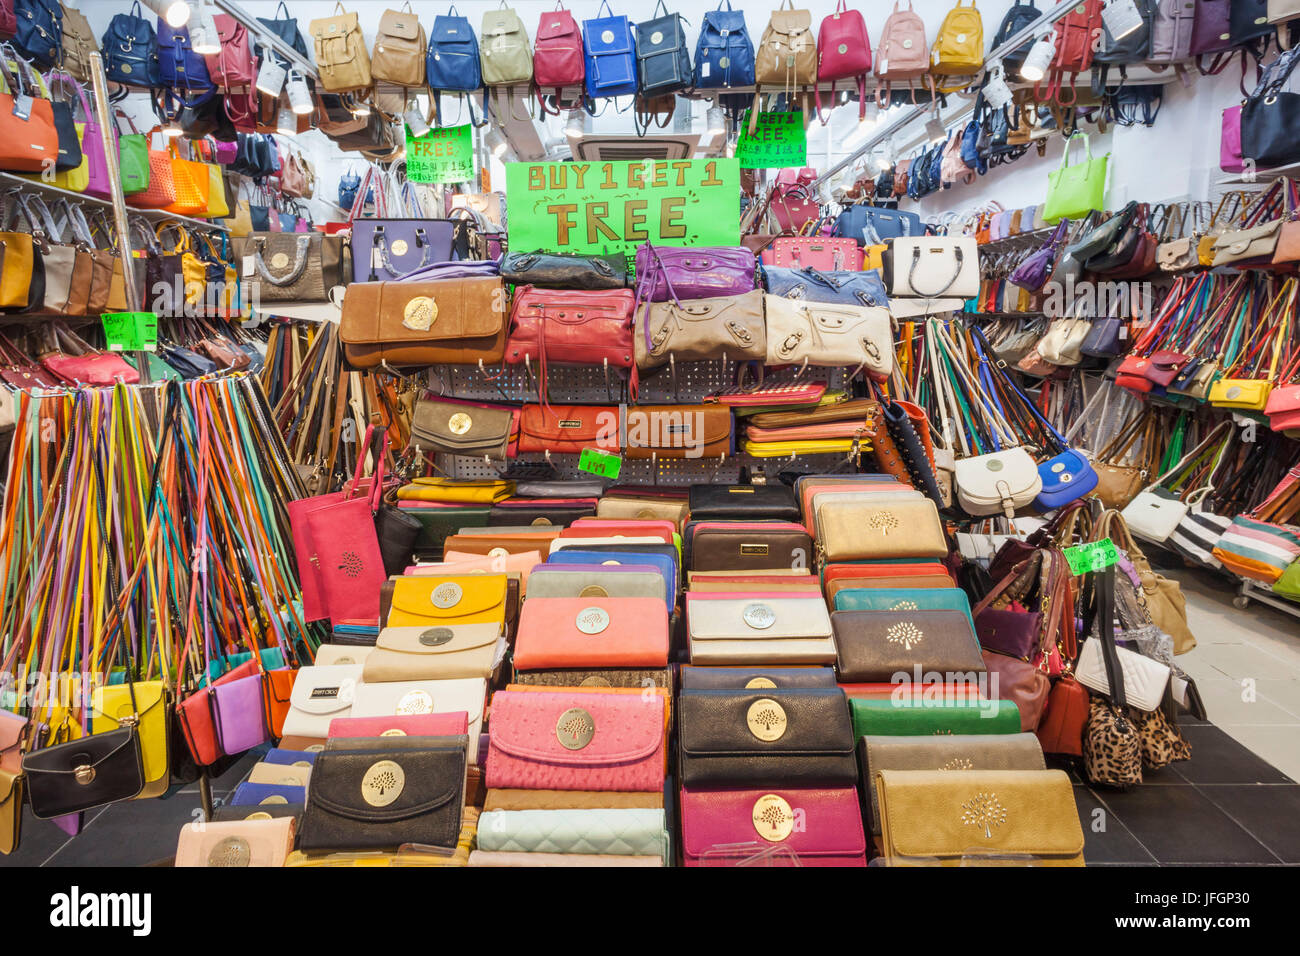 China, Hong Kong, Stanley Market, Shop Display of Fake Purses and Handbags Stock Photo